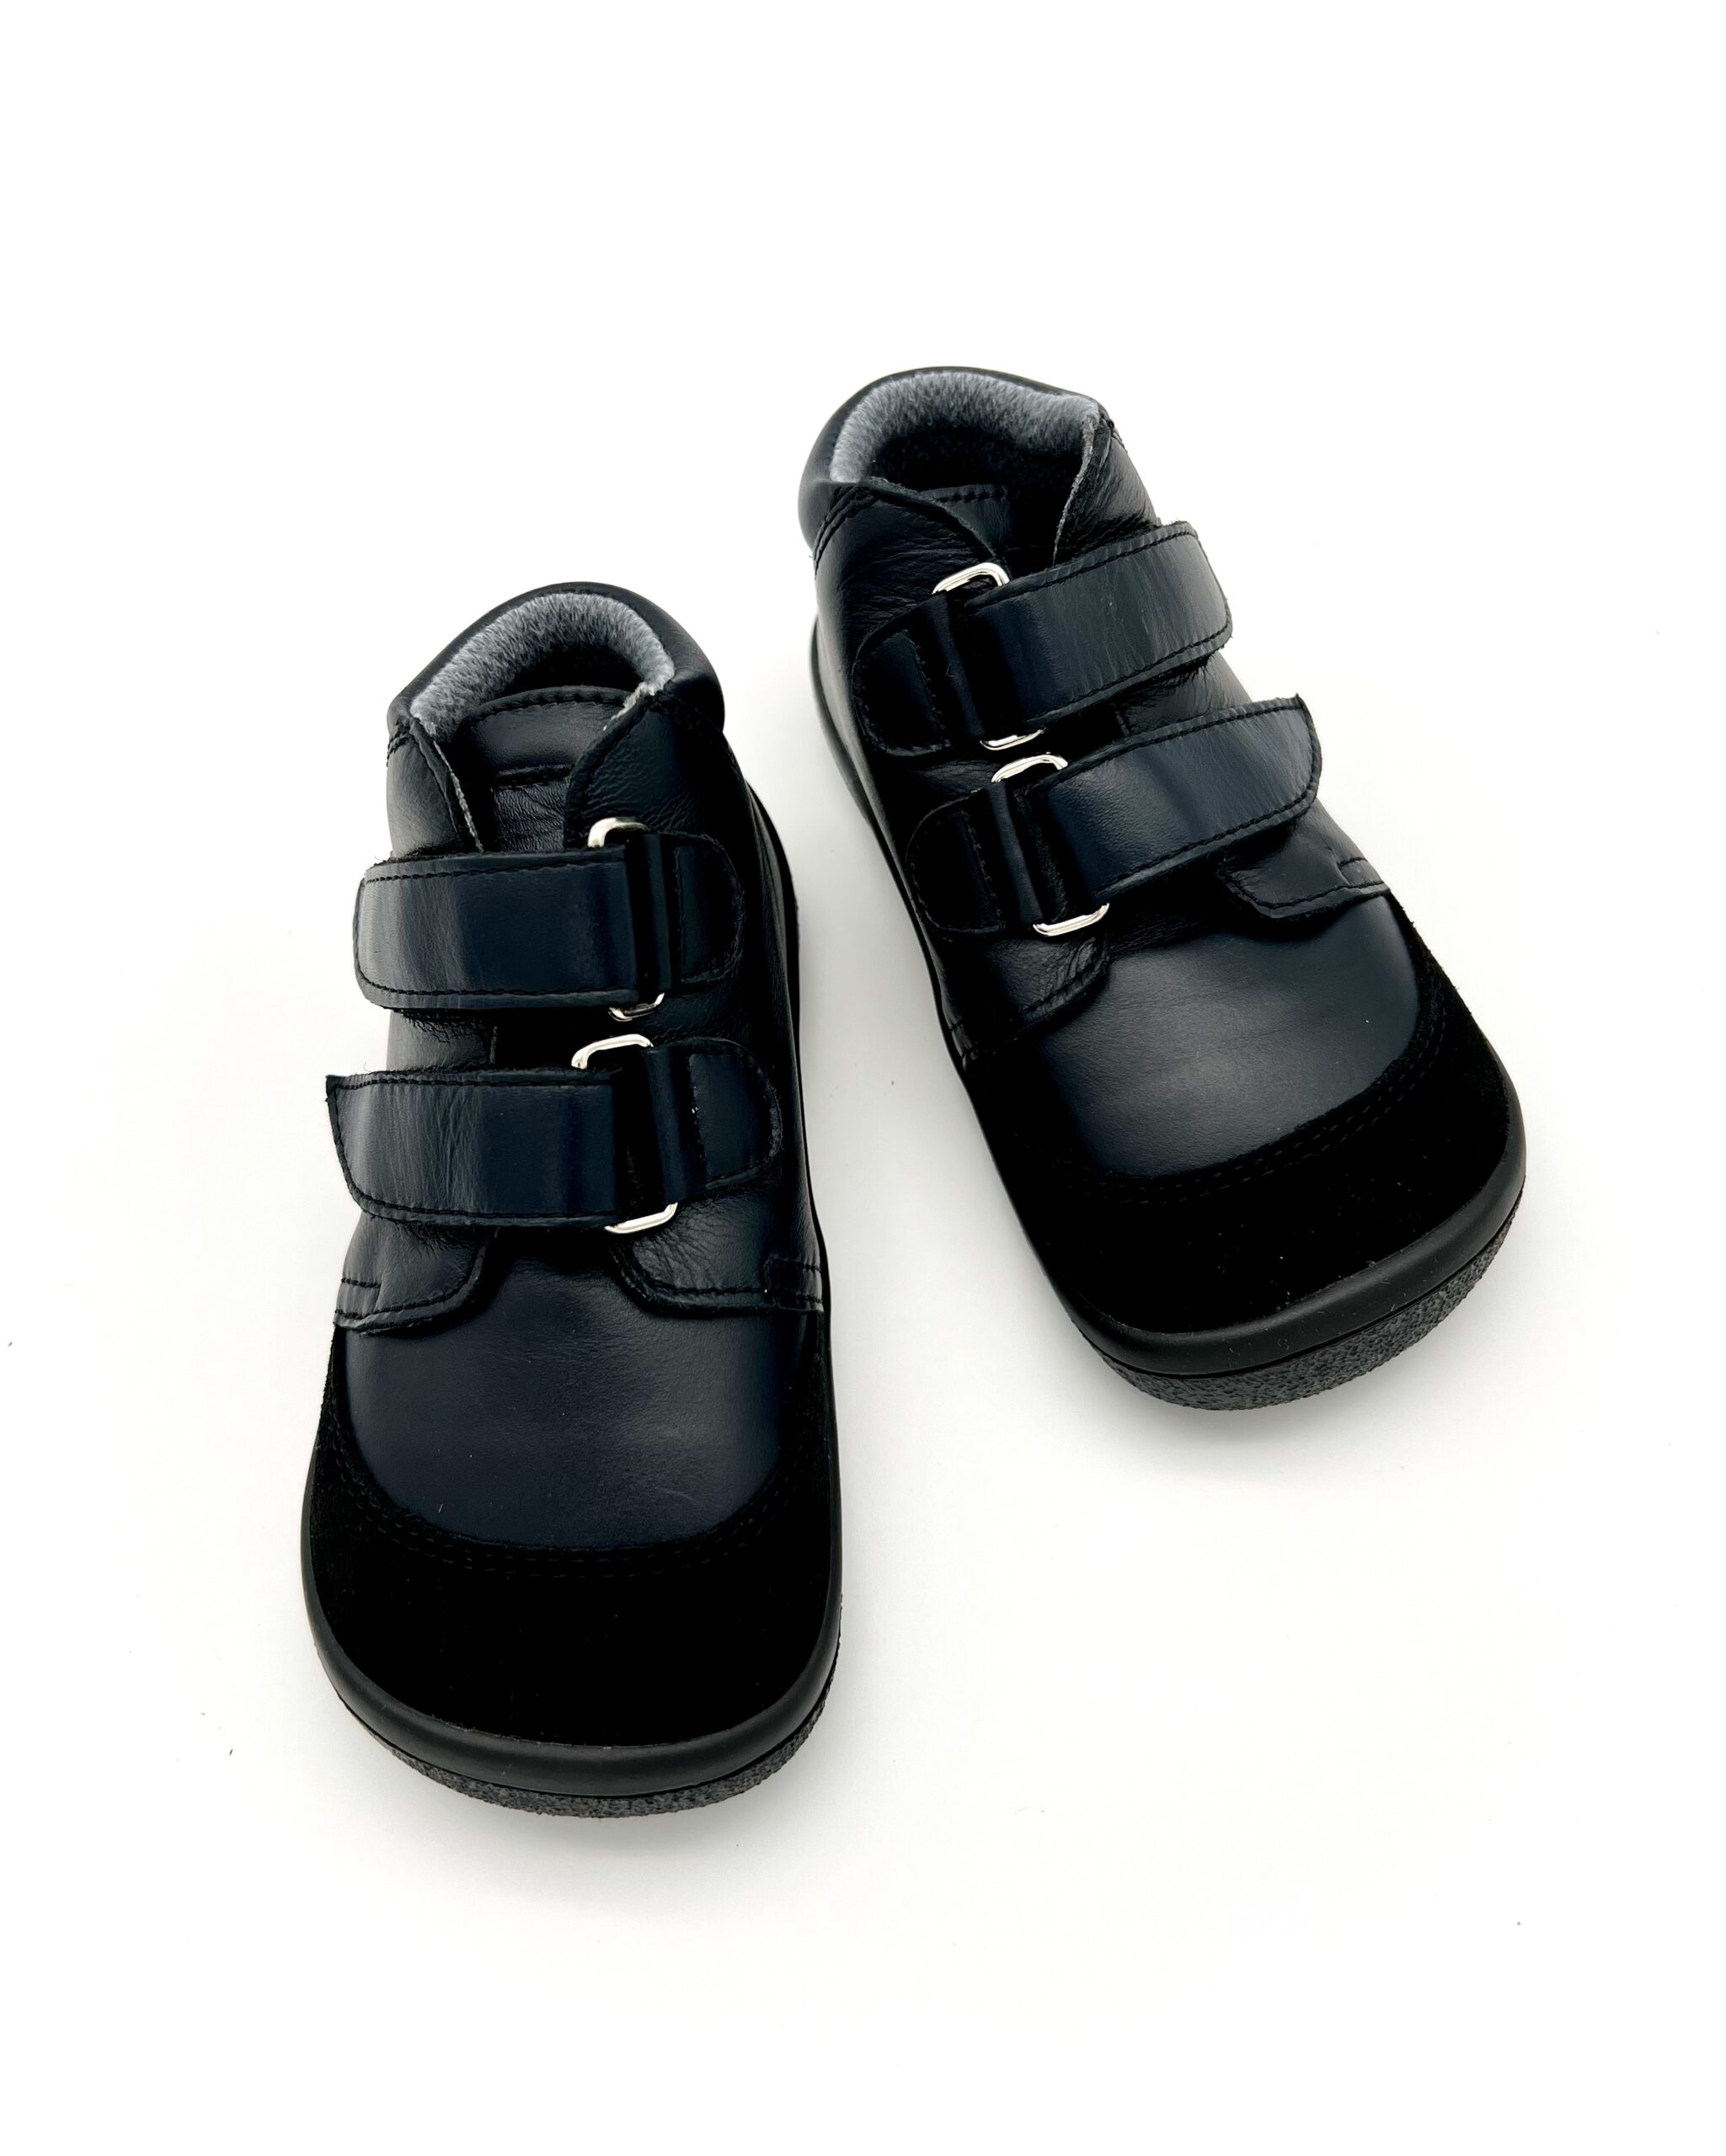 Beda membraaniga k/s saapad Just Black2- Kitsas kand Beda Boty valik - HellyK - Kvaliteetsed lasteriided, villariided, barefoot jalatsid